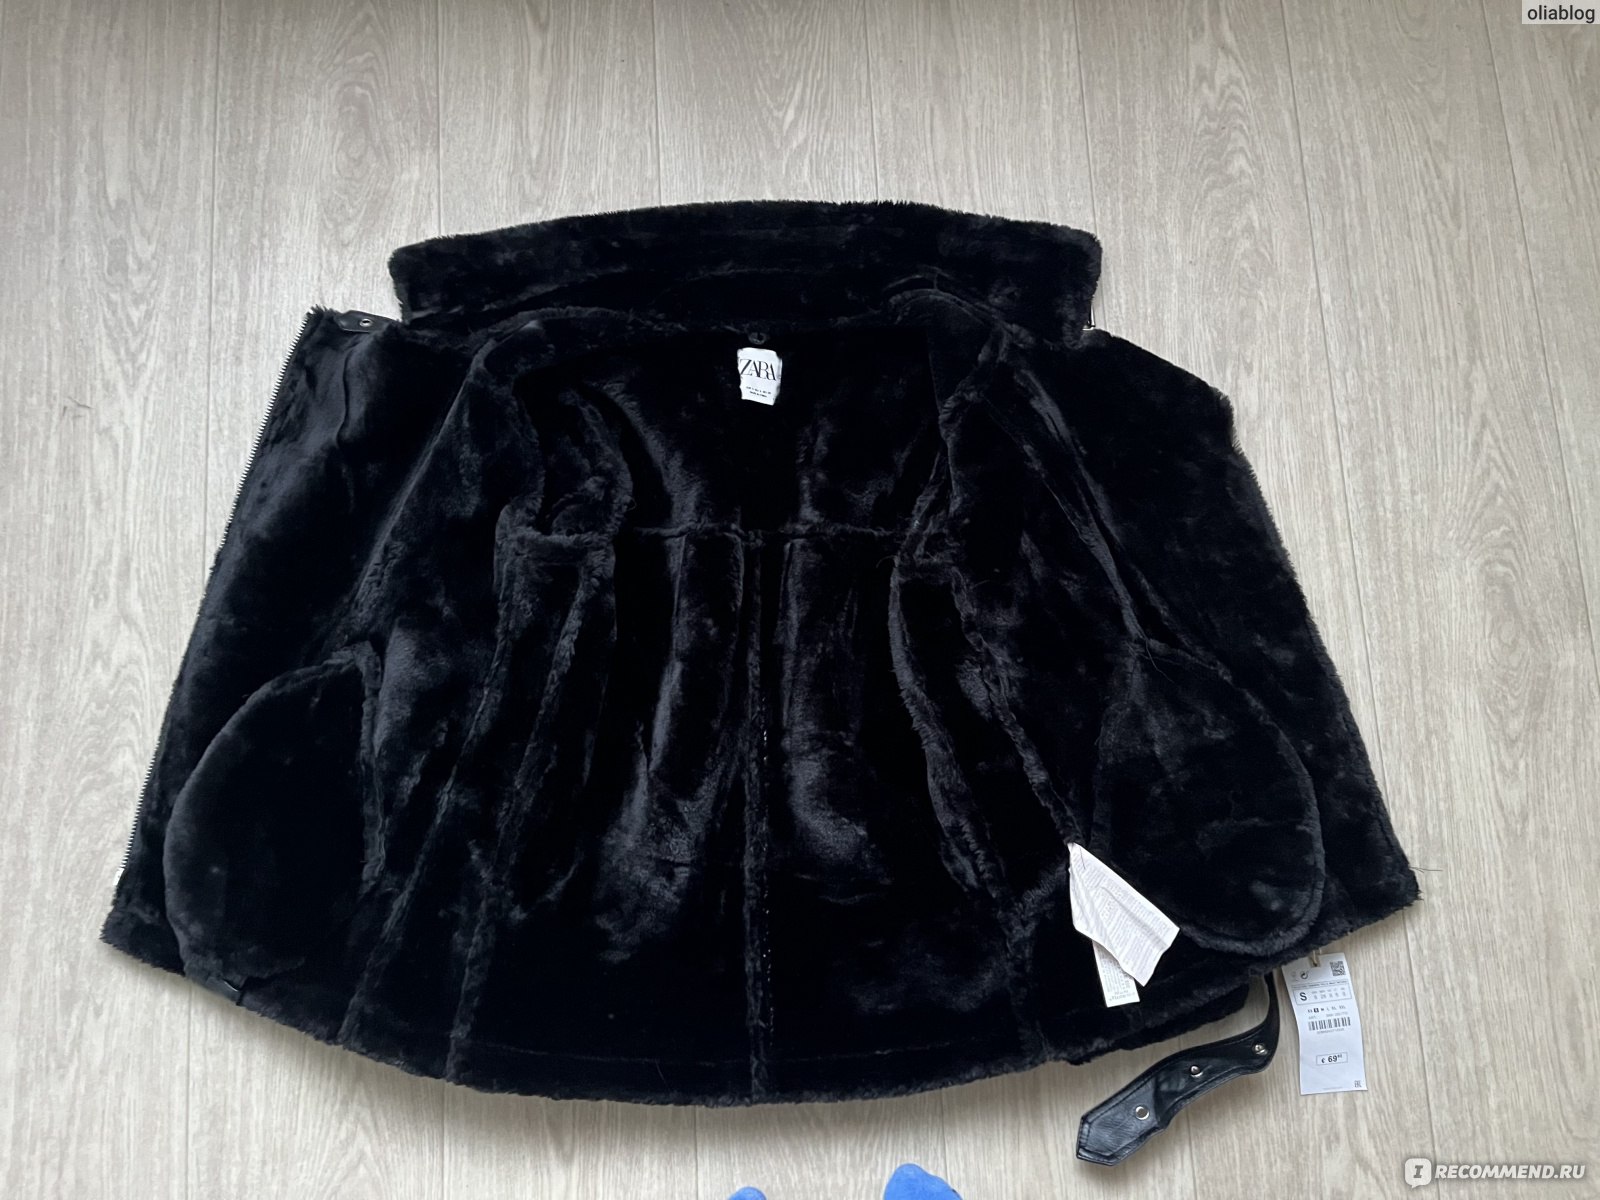 Дубленка AliExpress Garaouy 2022 New Women Winter Sheepskin Coat Thick Warm Faux Lamb Leather Jacket with Belt Loose Outerwear Streetwear фото